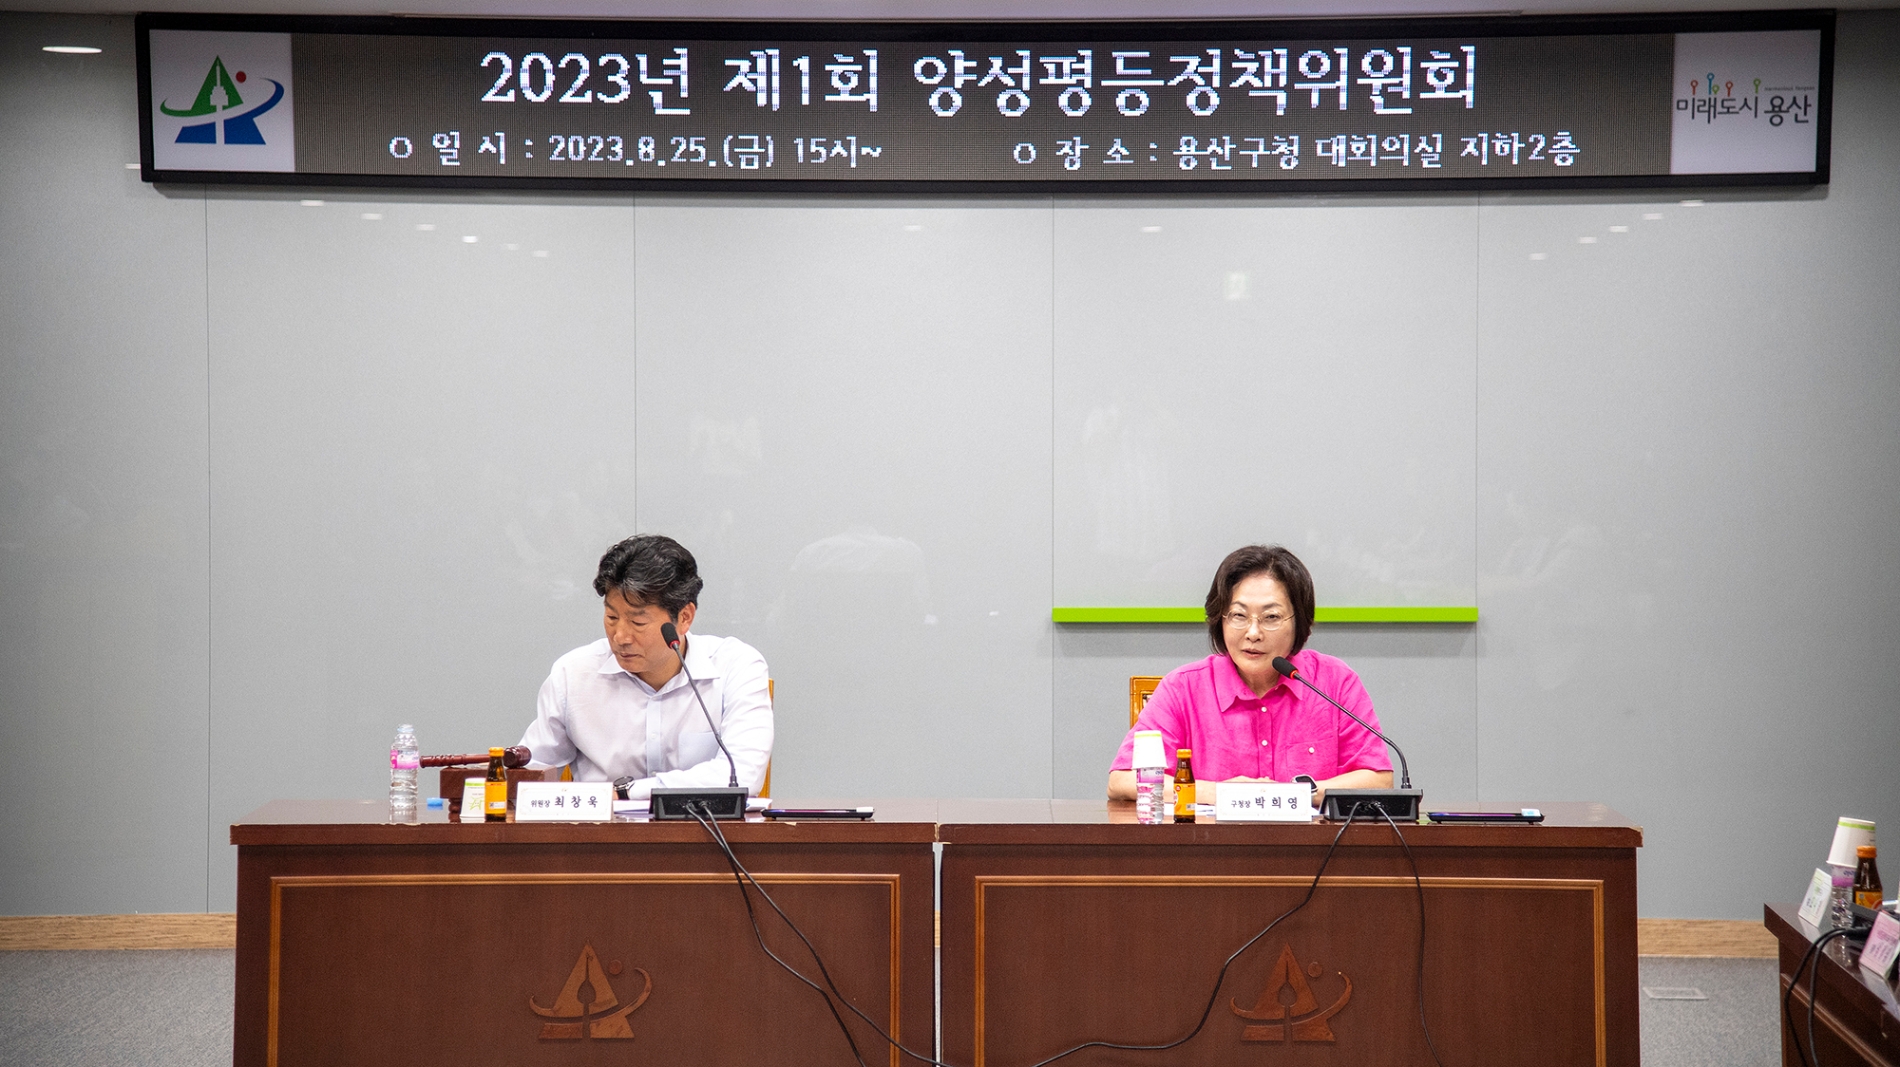 박희영 용산구청장(오른쪽)이 지난달 25일 양성평등정책위원회에 참석해 인사말을 하는 모습./사진제공=용산구